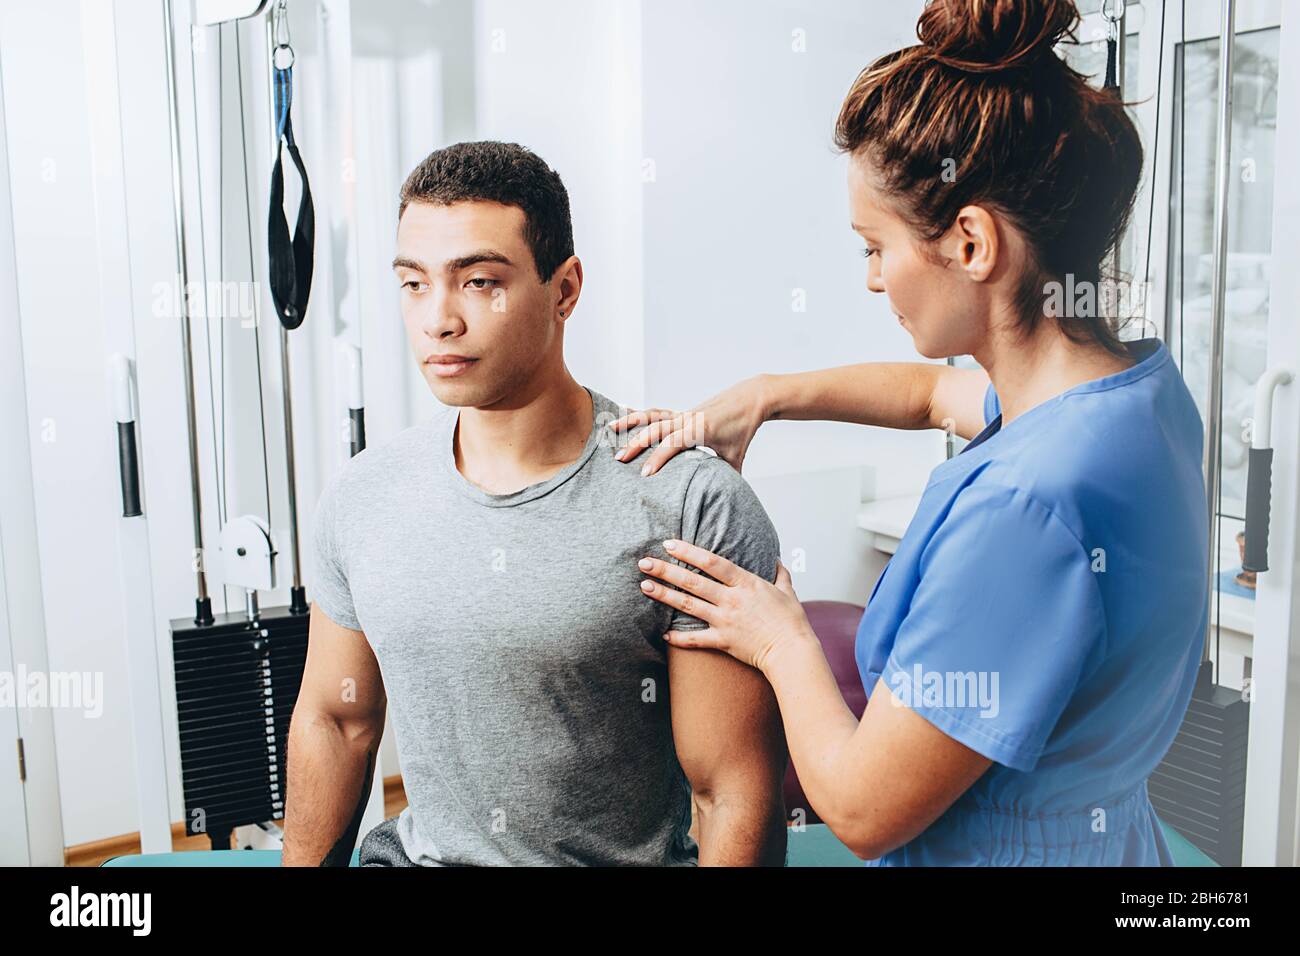 le physiothérapeute examine un patient avec une blessure de l'articulation de l'épaule. Traitement des athlètes après des blessures Banque D'Images